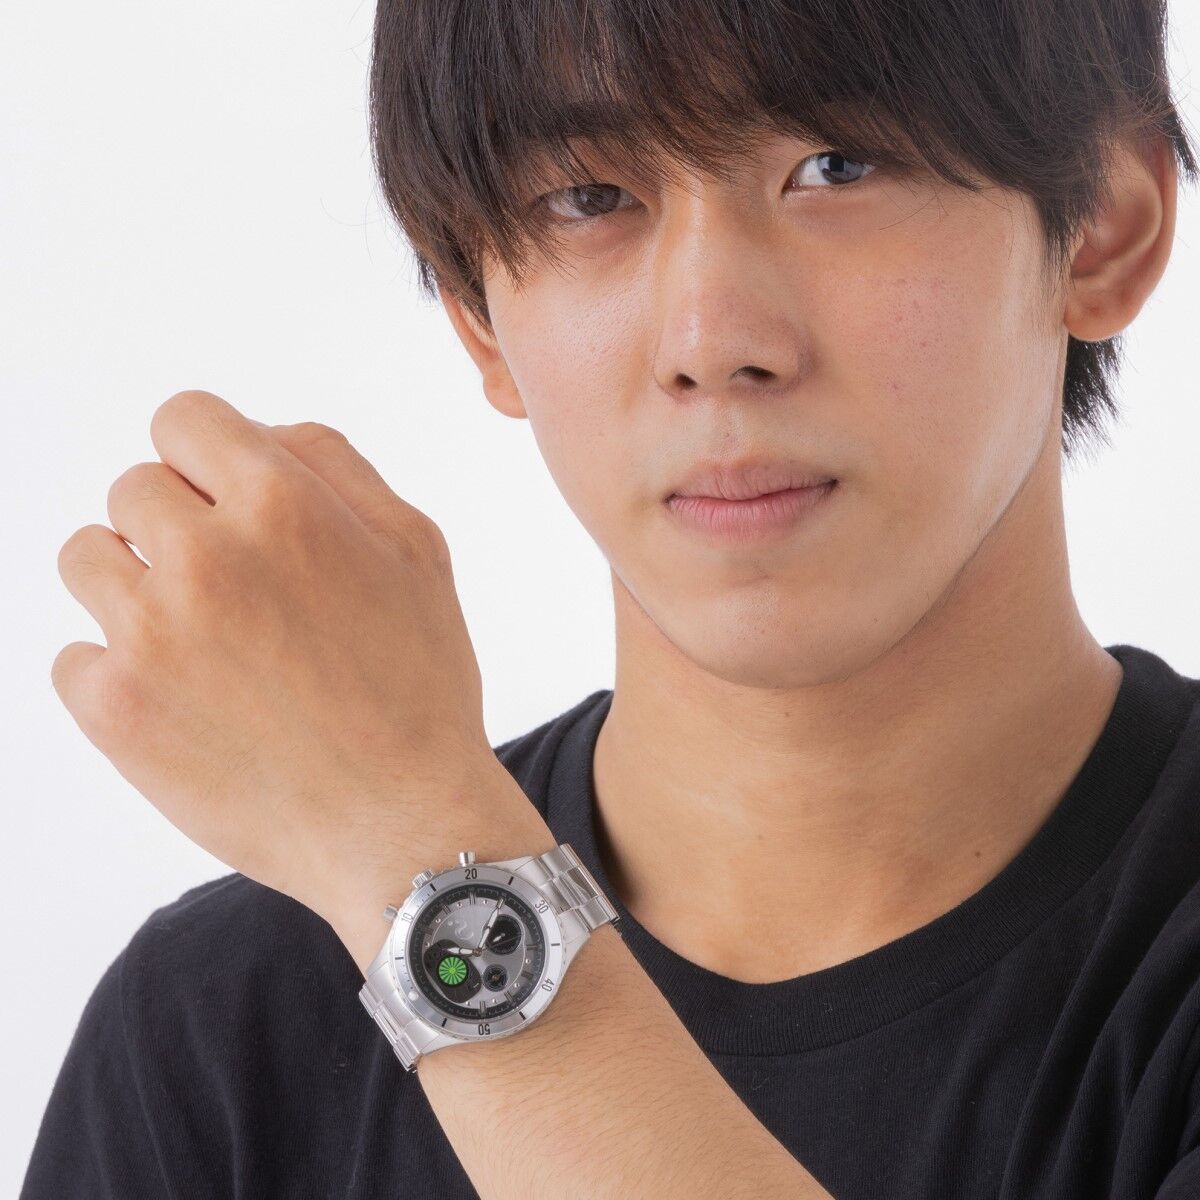 昭和仮面ライダー クロノグラフ腕時計【Live Action Watch】〔BLACK